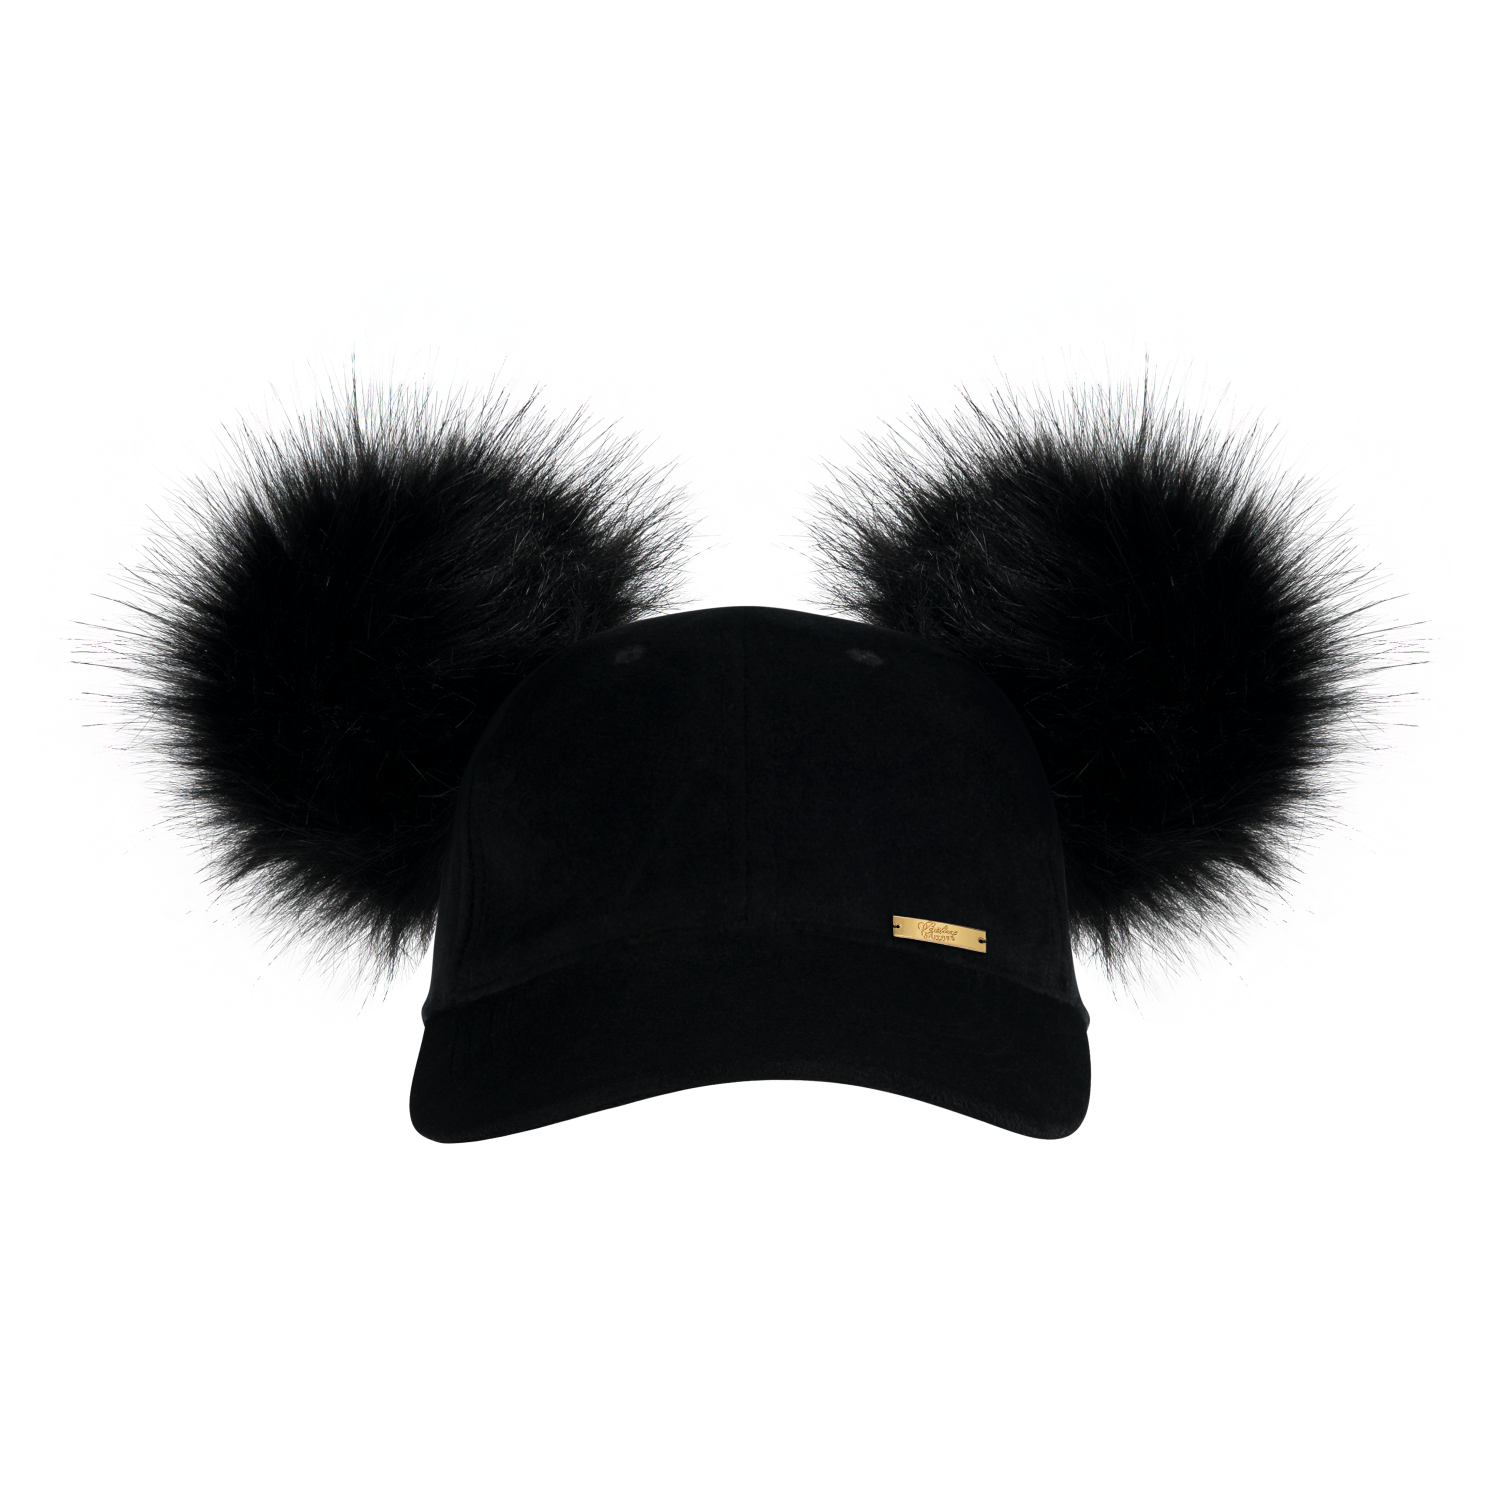 Black velvet cap